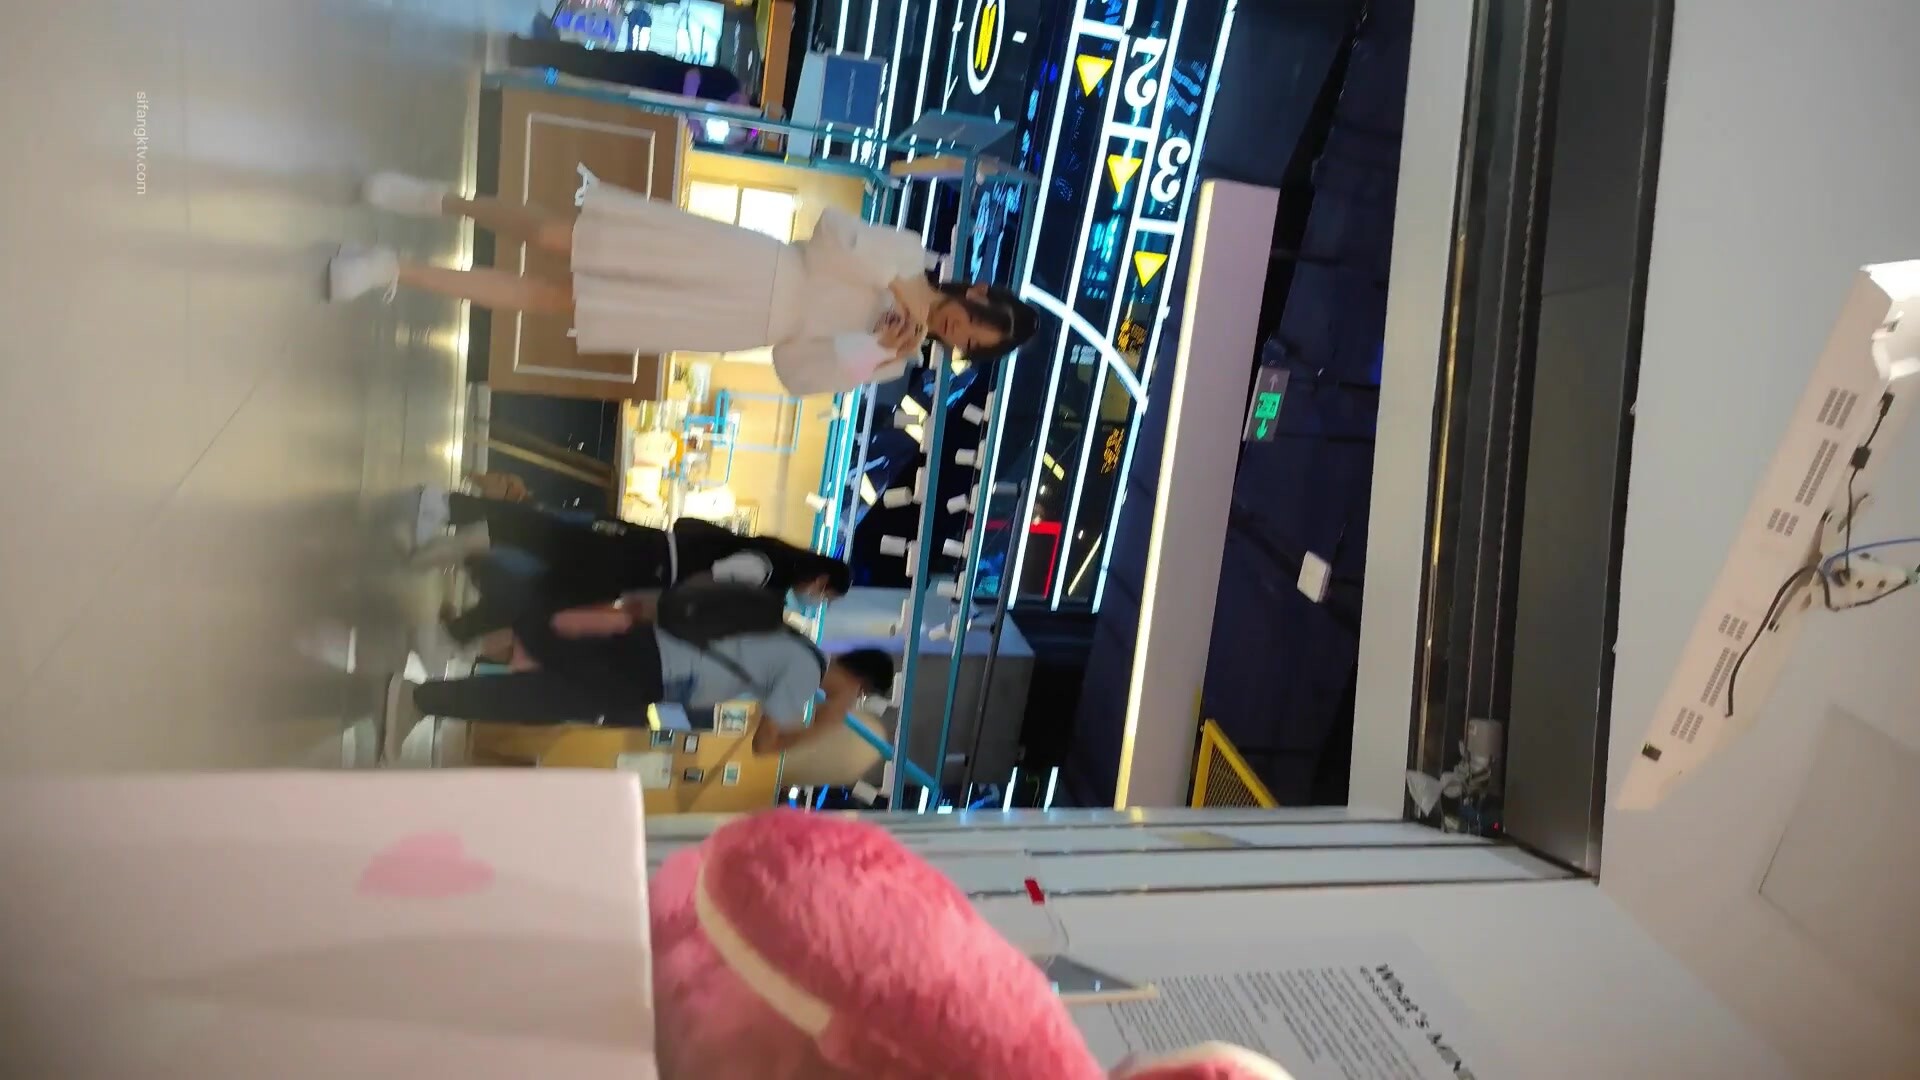 스커트 순수 여학생 흰색 드레스, 섹시한 핑크 팬티 아래에서 몰래 촬영 한 미녀를 훔치는 마스터 쇼핑몰 꼬리 미행